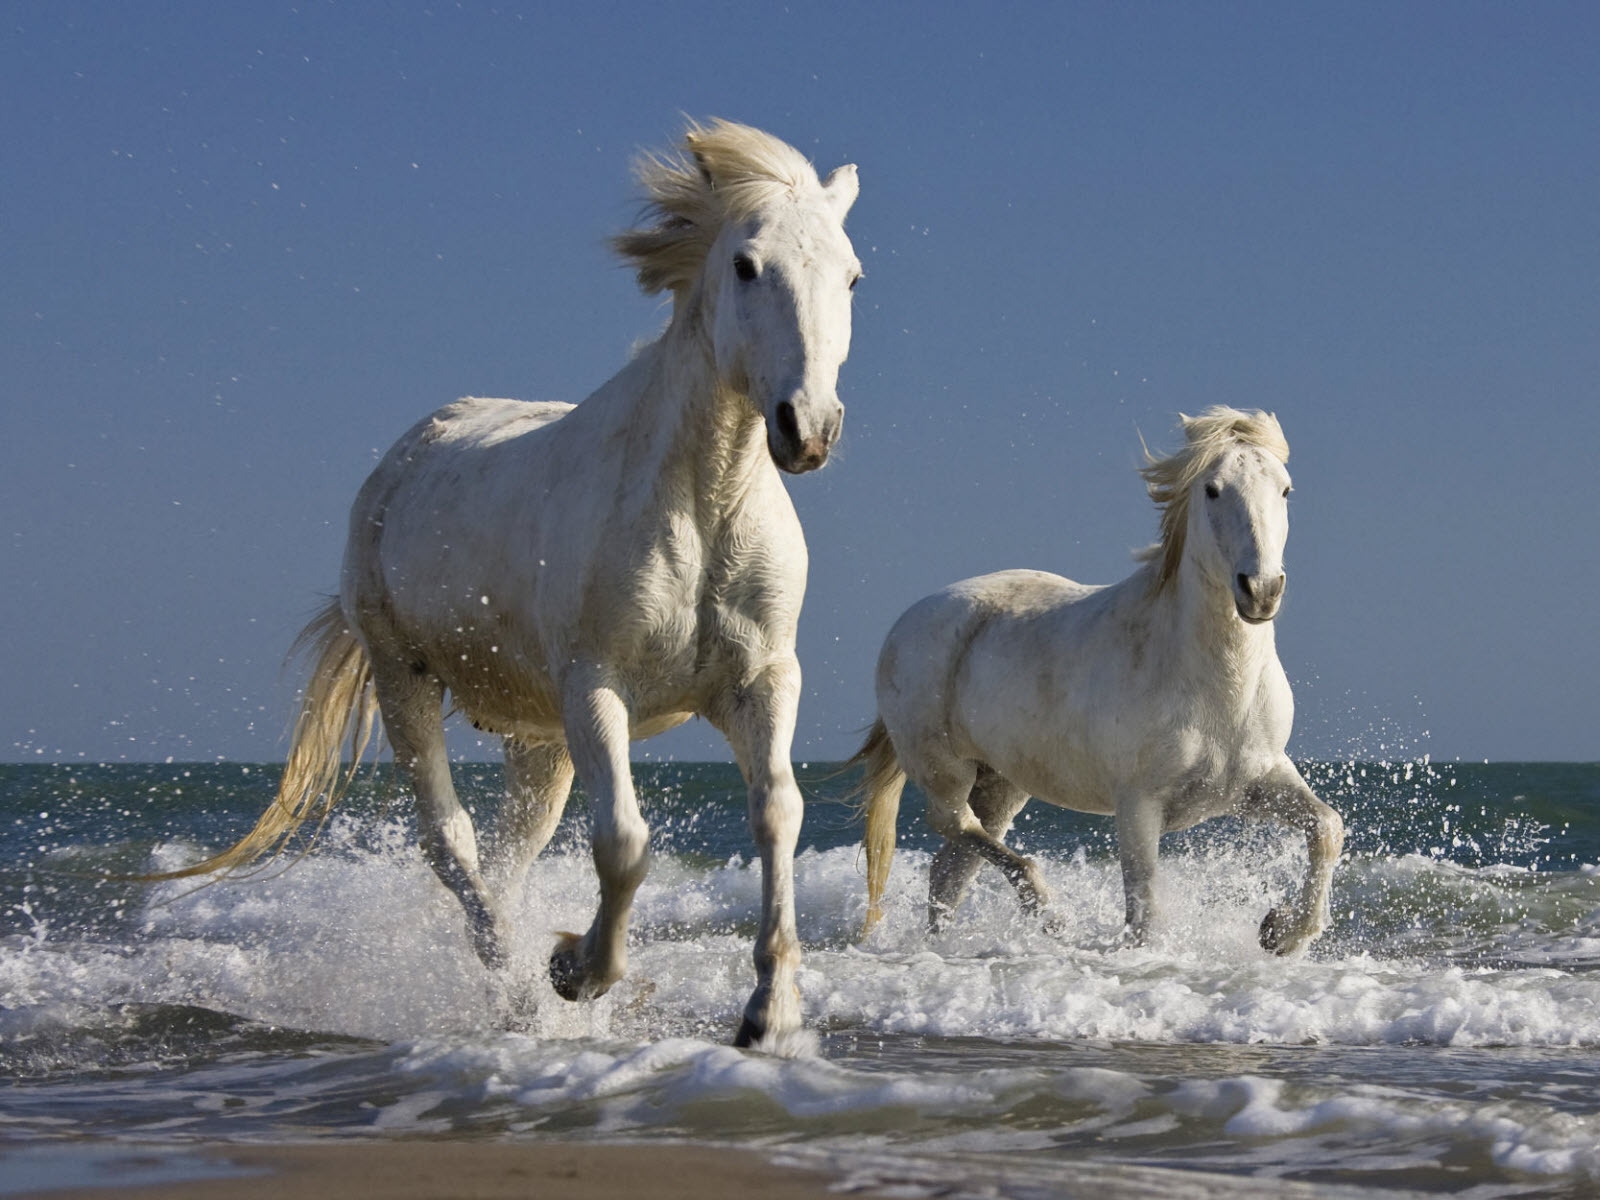 33+] White Horse Running On Beach Wallpapers - WallpaperSafari